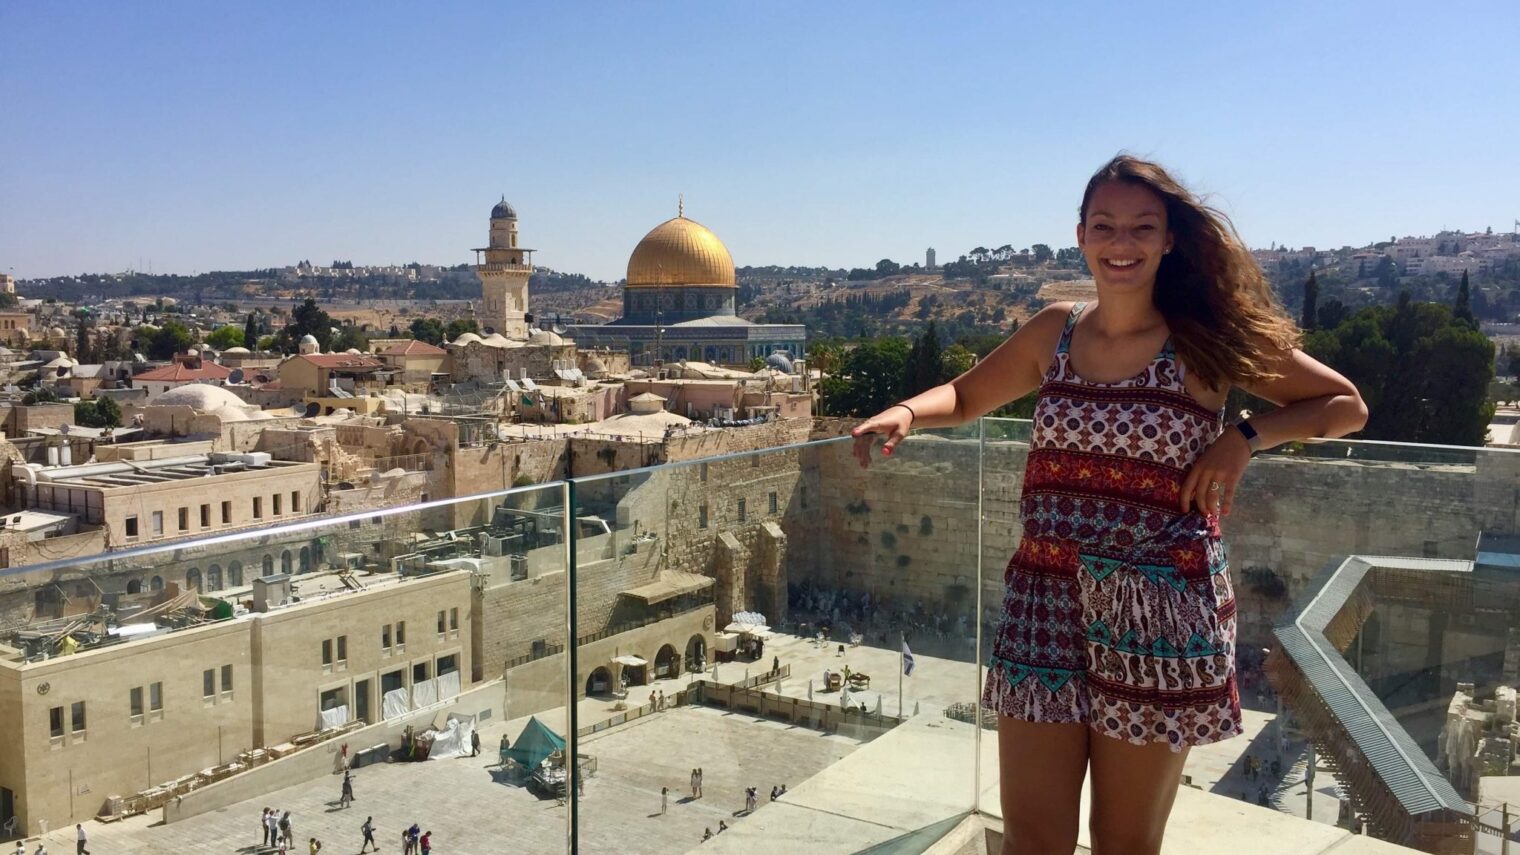 Sarah Winkelman in Jerusalem’s Old City. Photo: courtesy